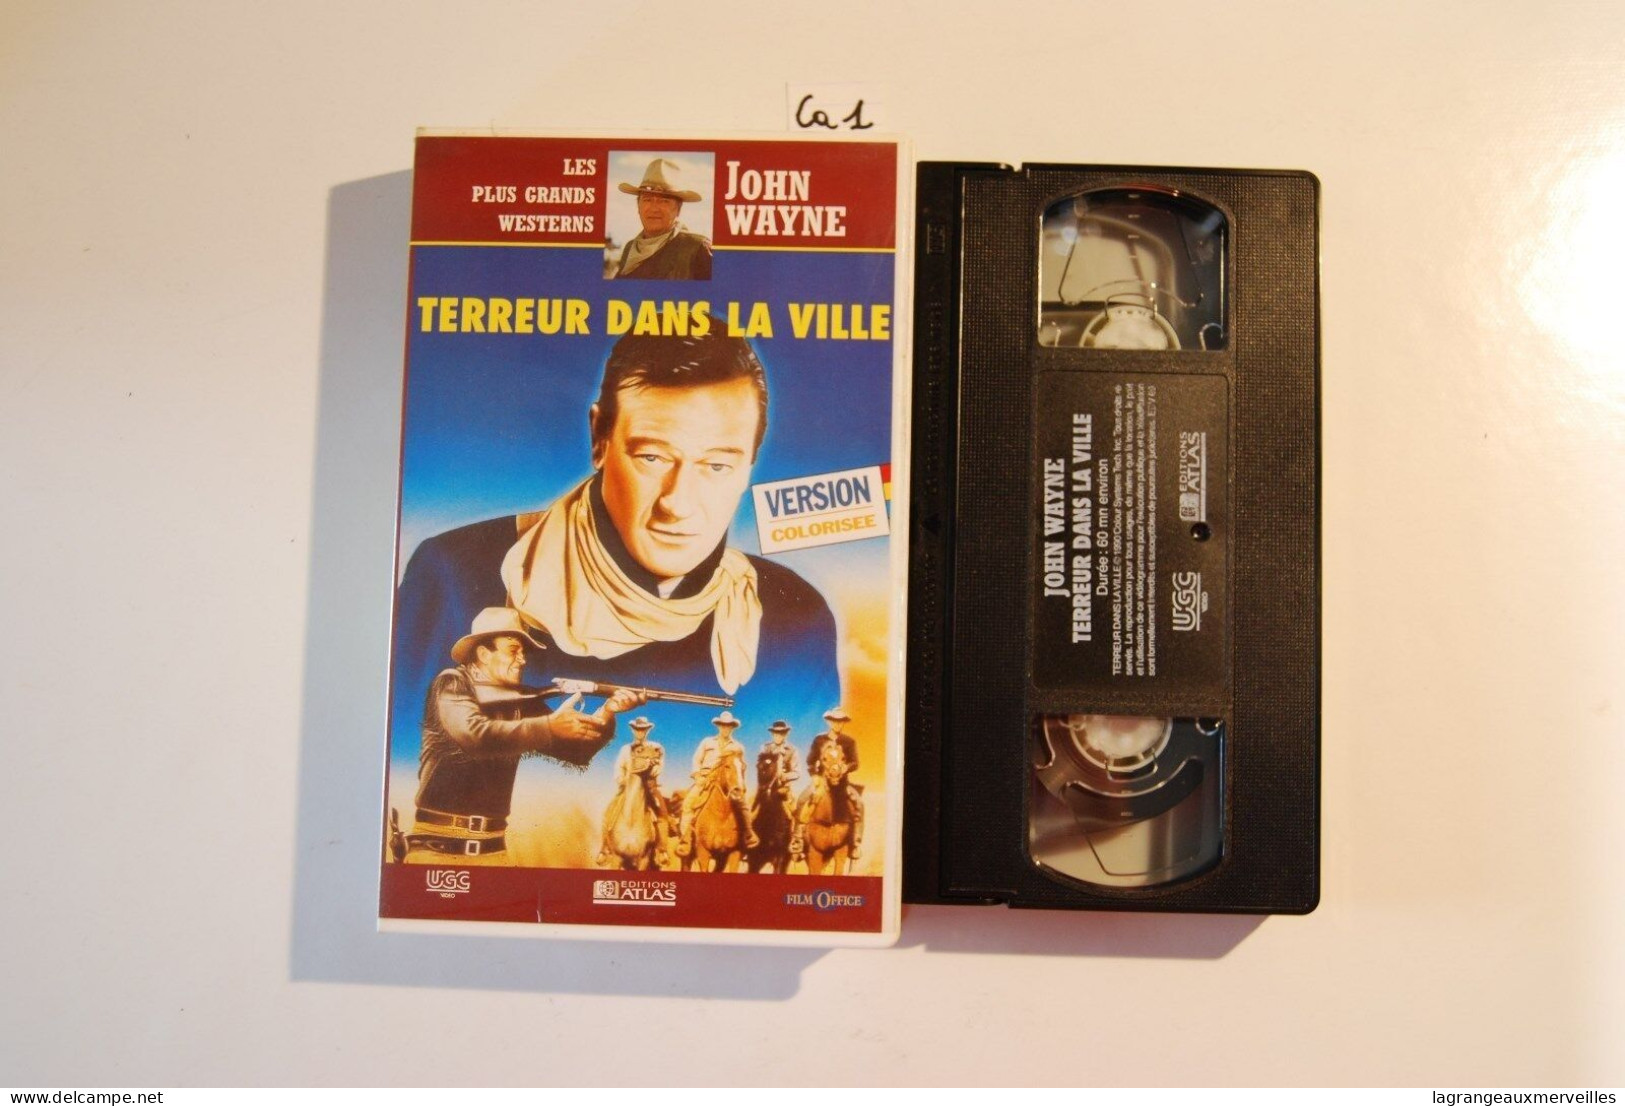 CA1 Cassette Vidéo VHS JOHN WAYNE TERREUR DANS LA VILLE - Western